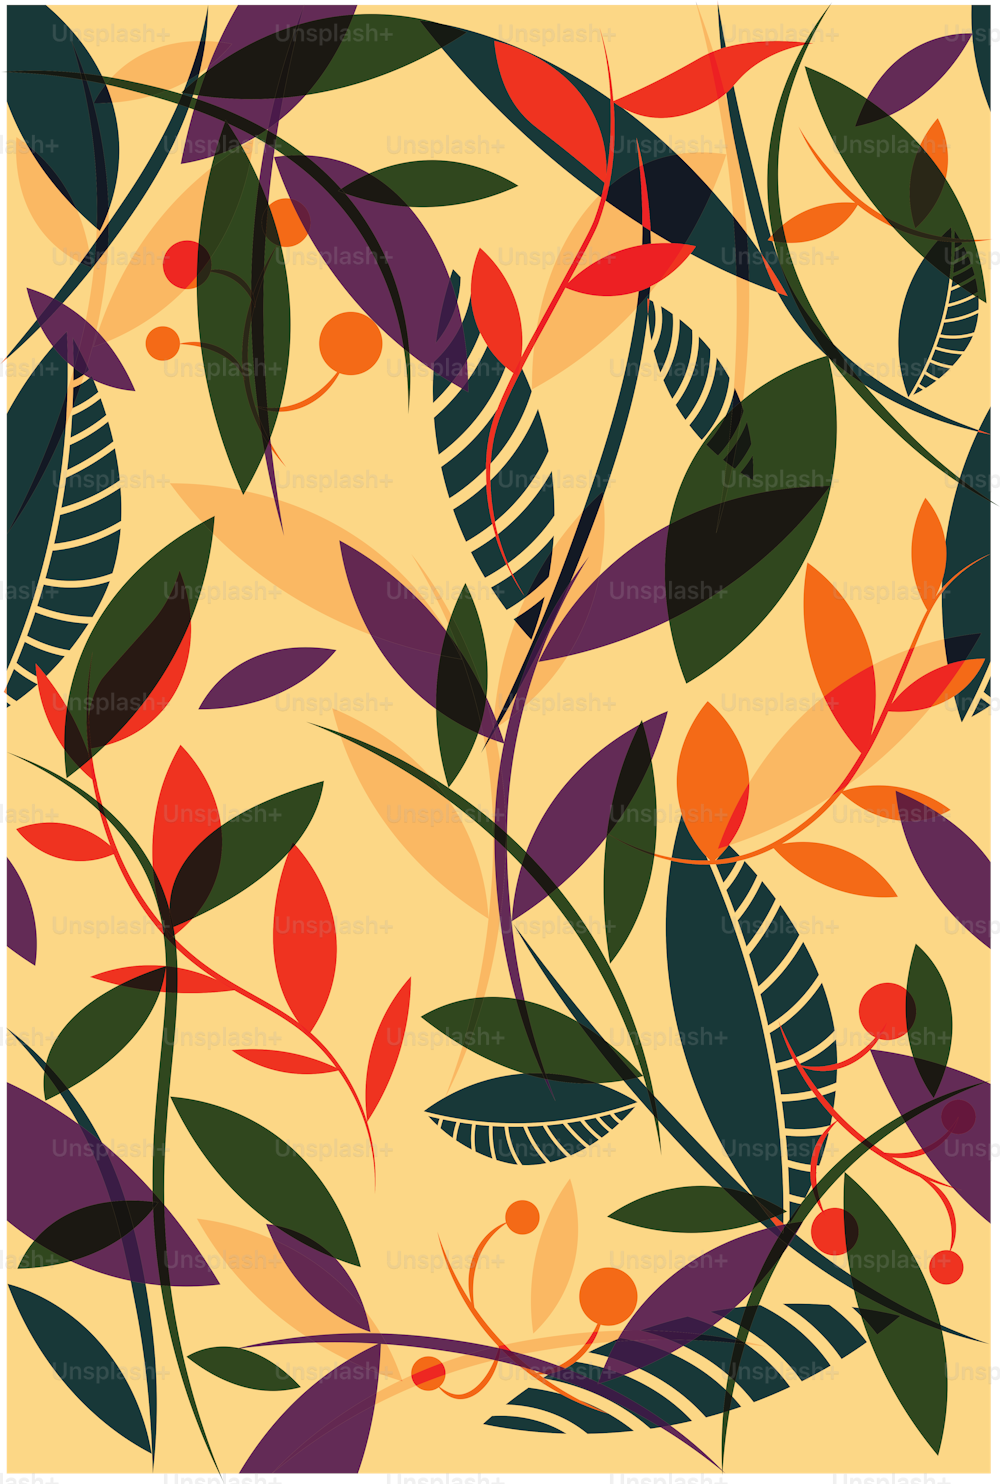 Estampado floral tropical. Estilo de moda para telas y textiles. Diseño plano, colores brillantes. Verano, primavera. Ilustración vectorial.